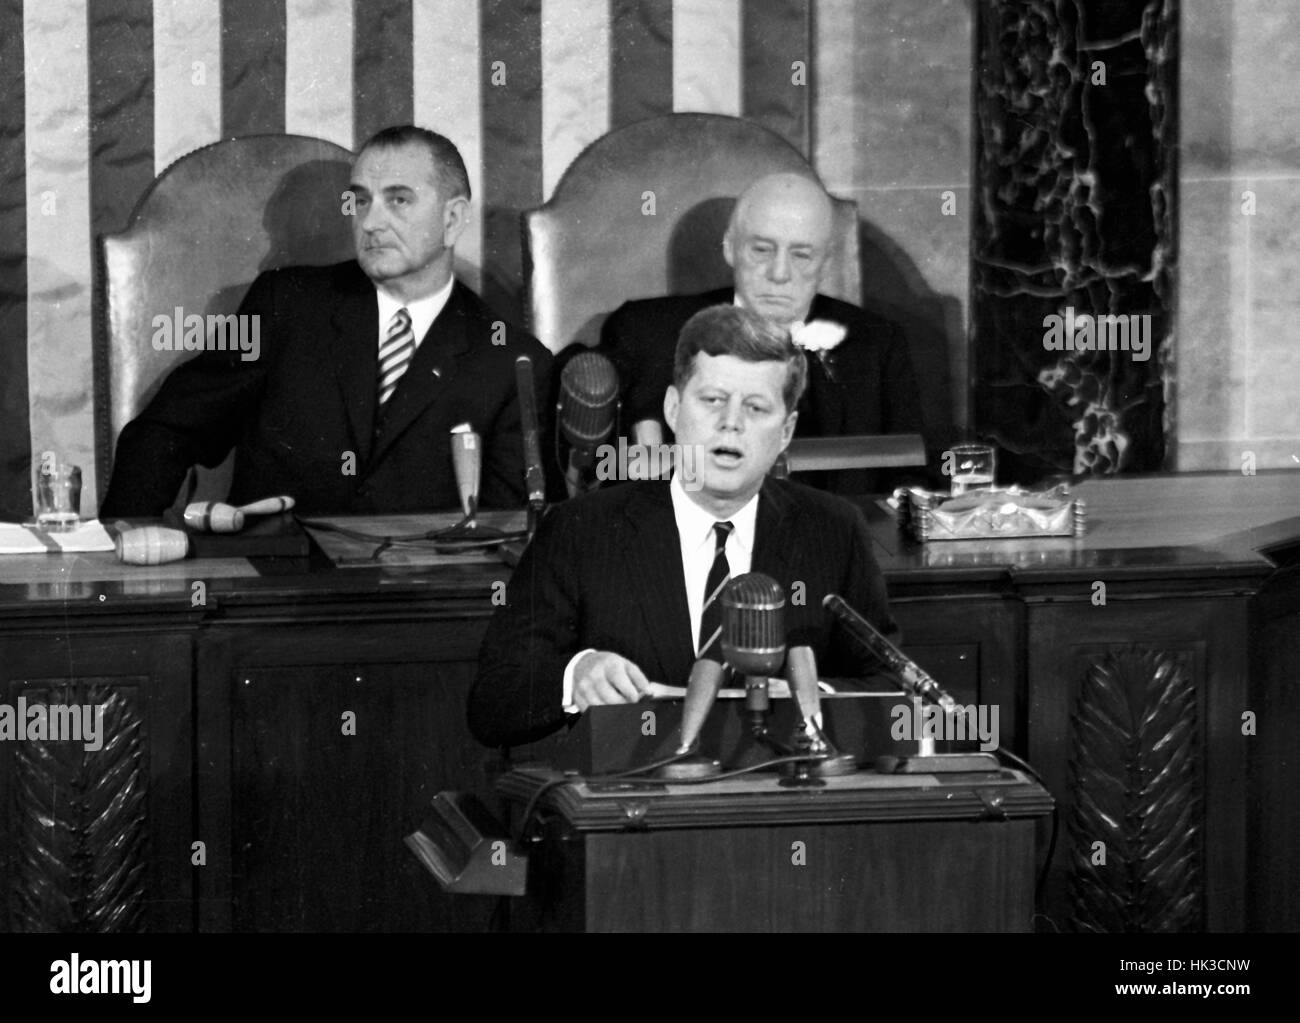 El Presidente de Estados Unidos, John F. Kennedy, esbozó su visión para la exploración espacial tripulada a una sesión conjunta del Congreso de los Estados Unidos, en Washington, DC, el 25 de mayo de 1961, cuando declaró, "...creo que esta nación debería comprometerse a lograr t Foto de stock